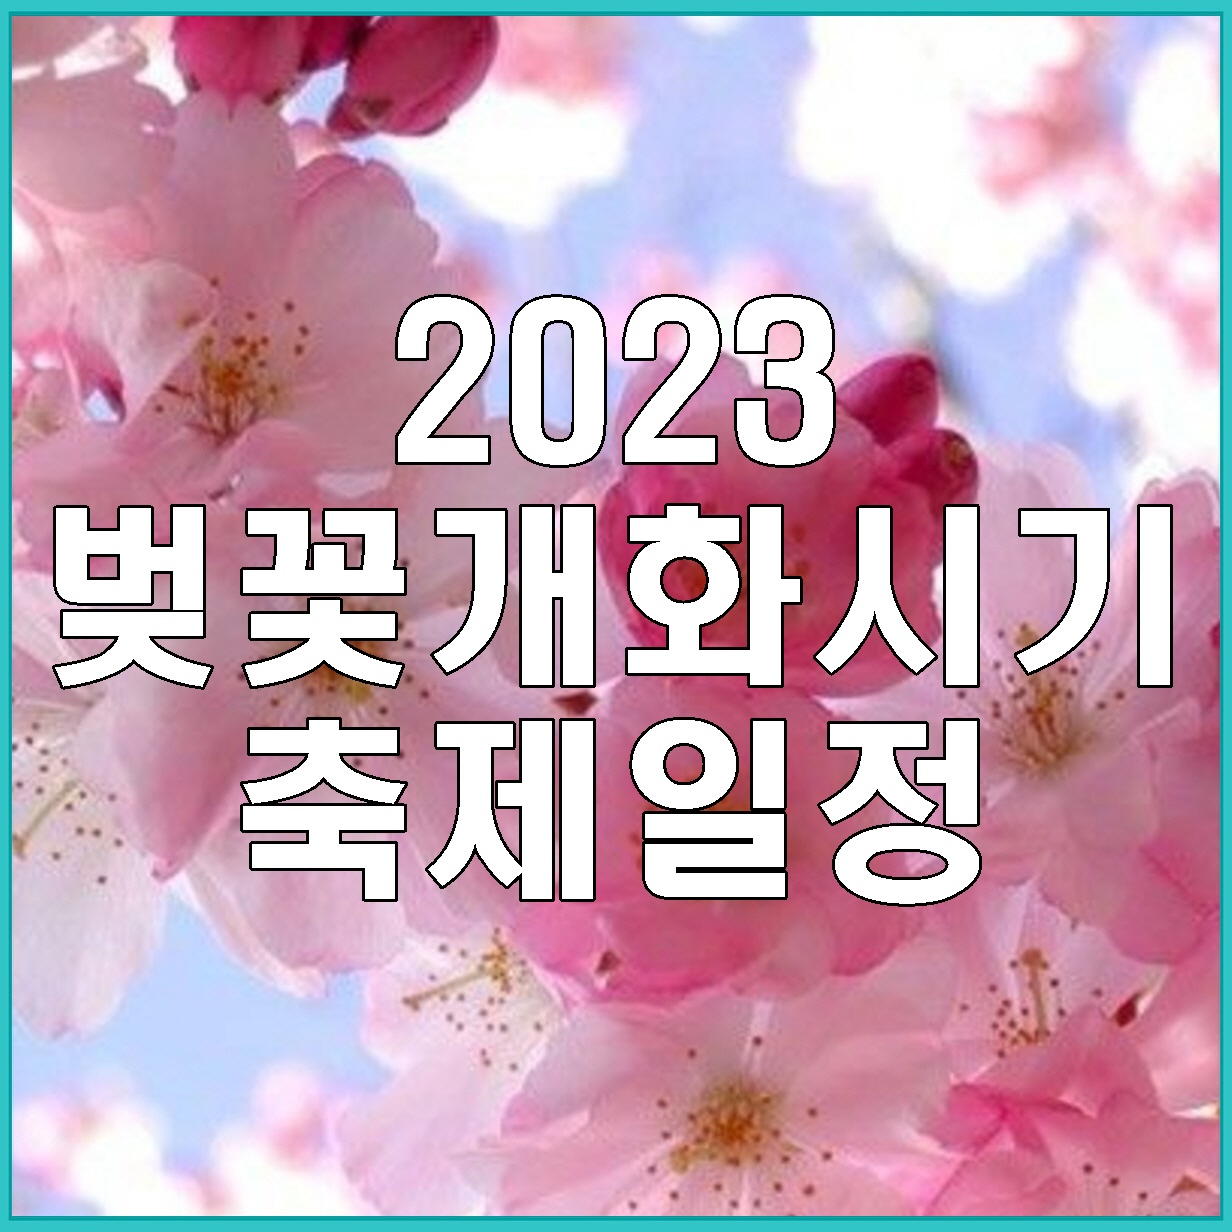 2023-벚꽃-개화시기